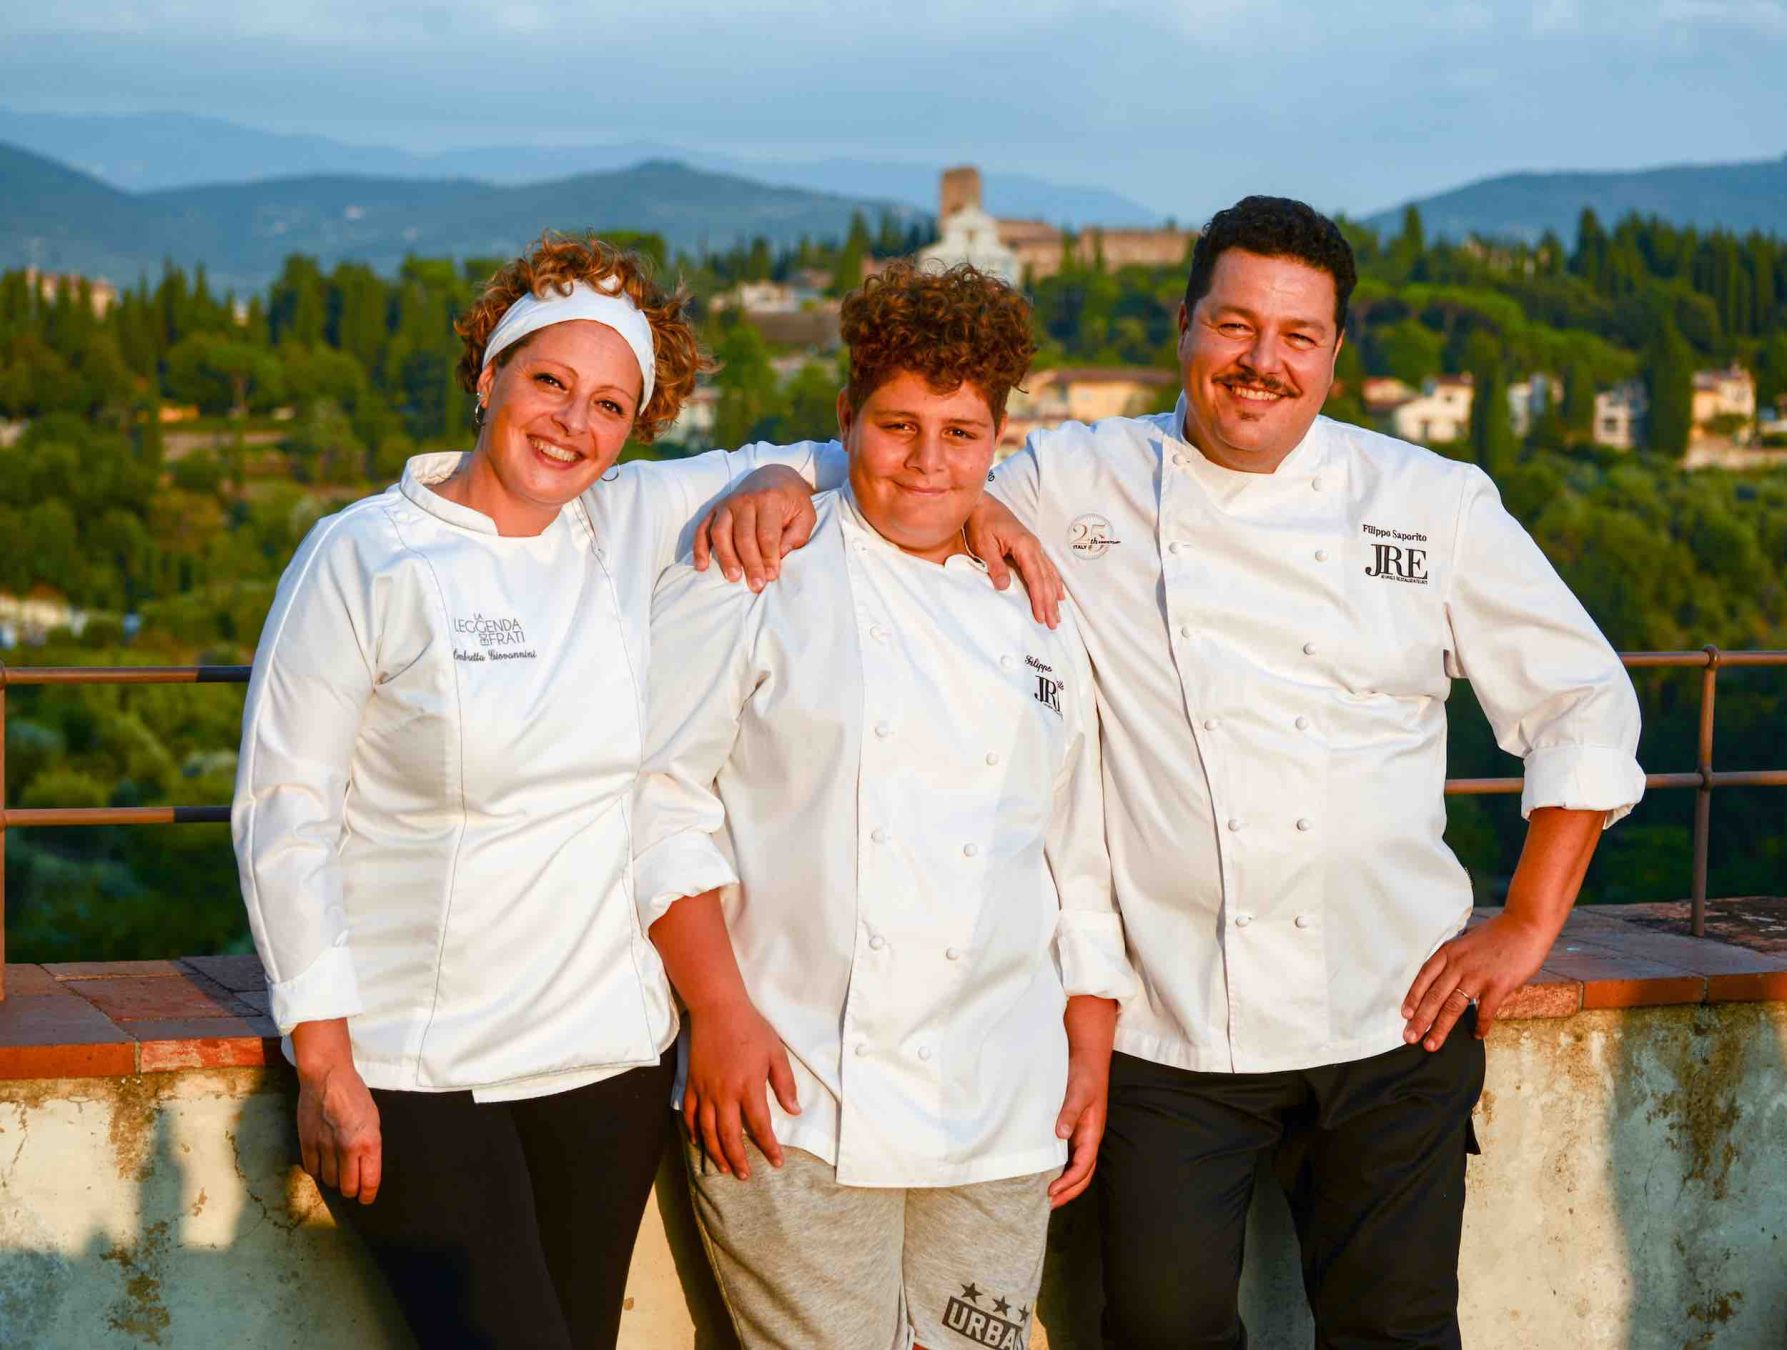 Il 4 Luglio 2019 al Forte Belvedere di Firenze si terrà Italian Chef Charity Night 2019: evento di solidarietà che coinvolge i migliori chef toscani.